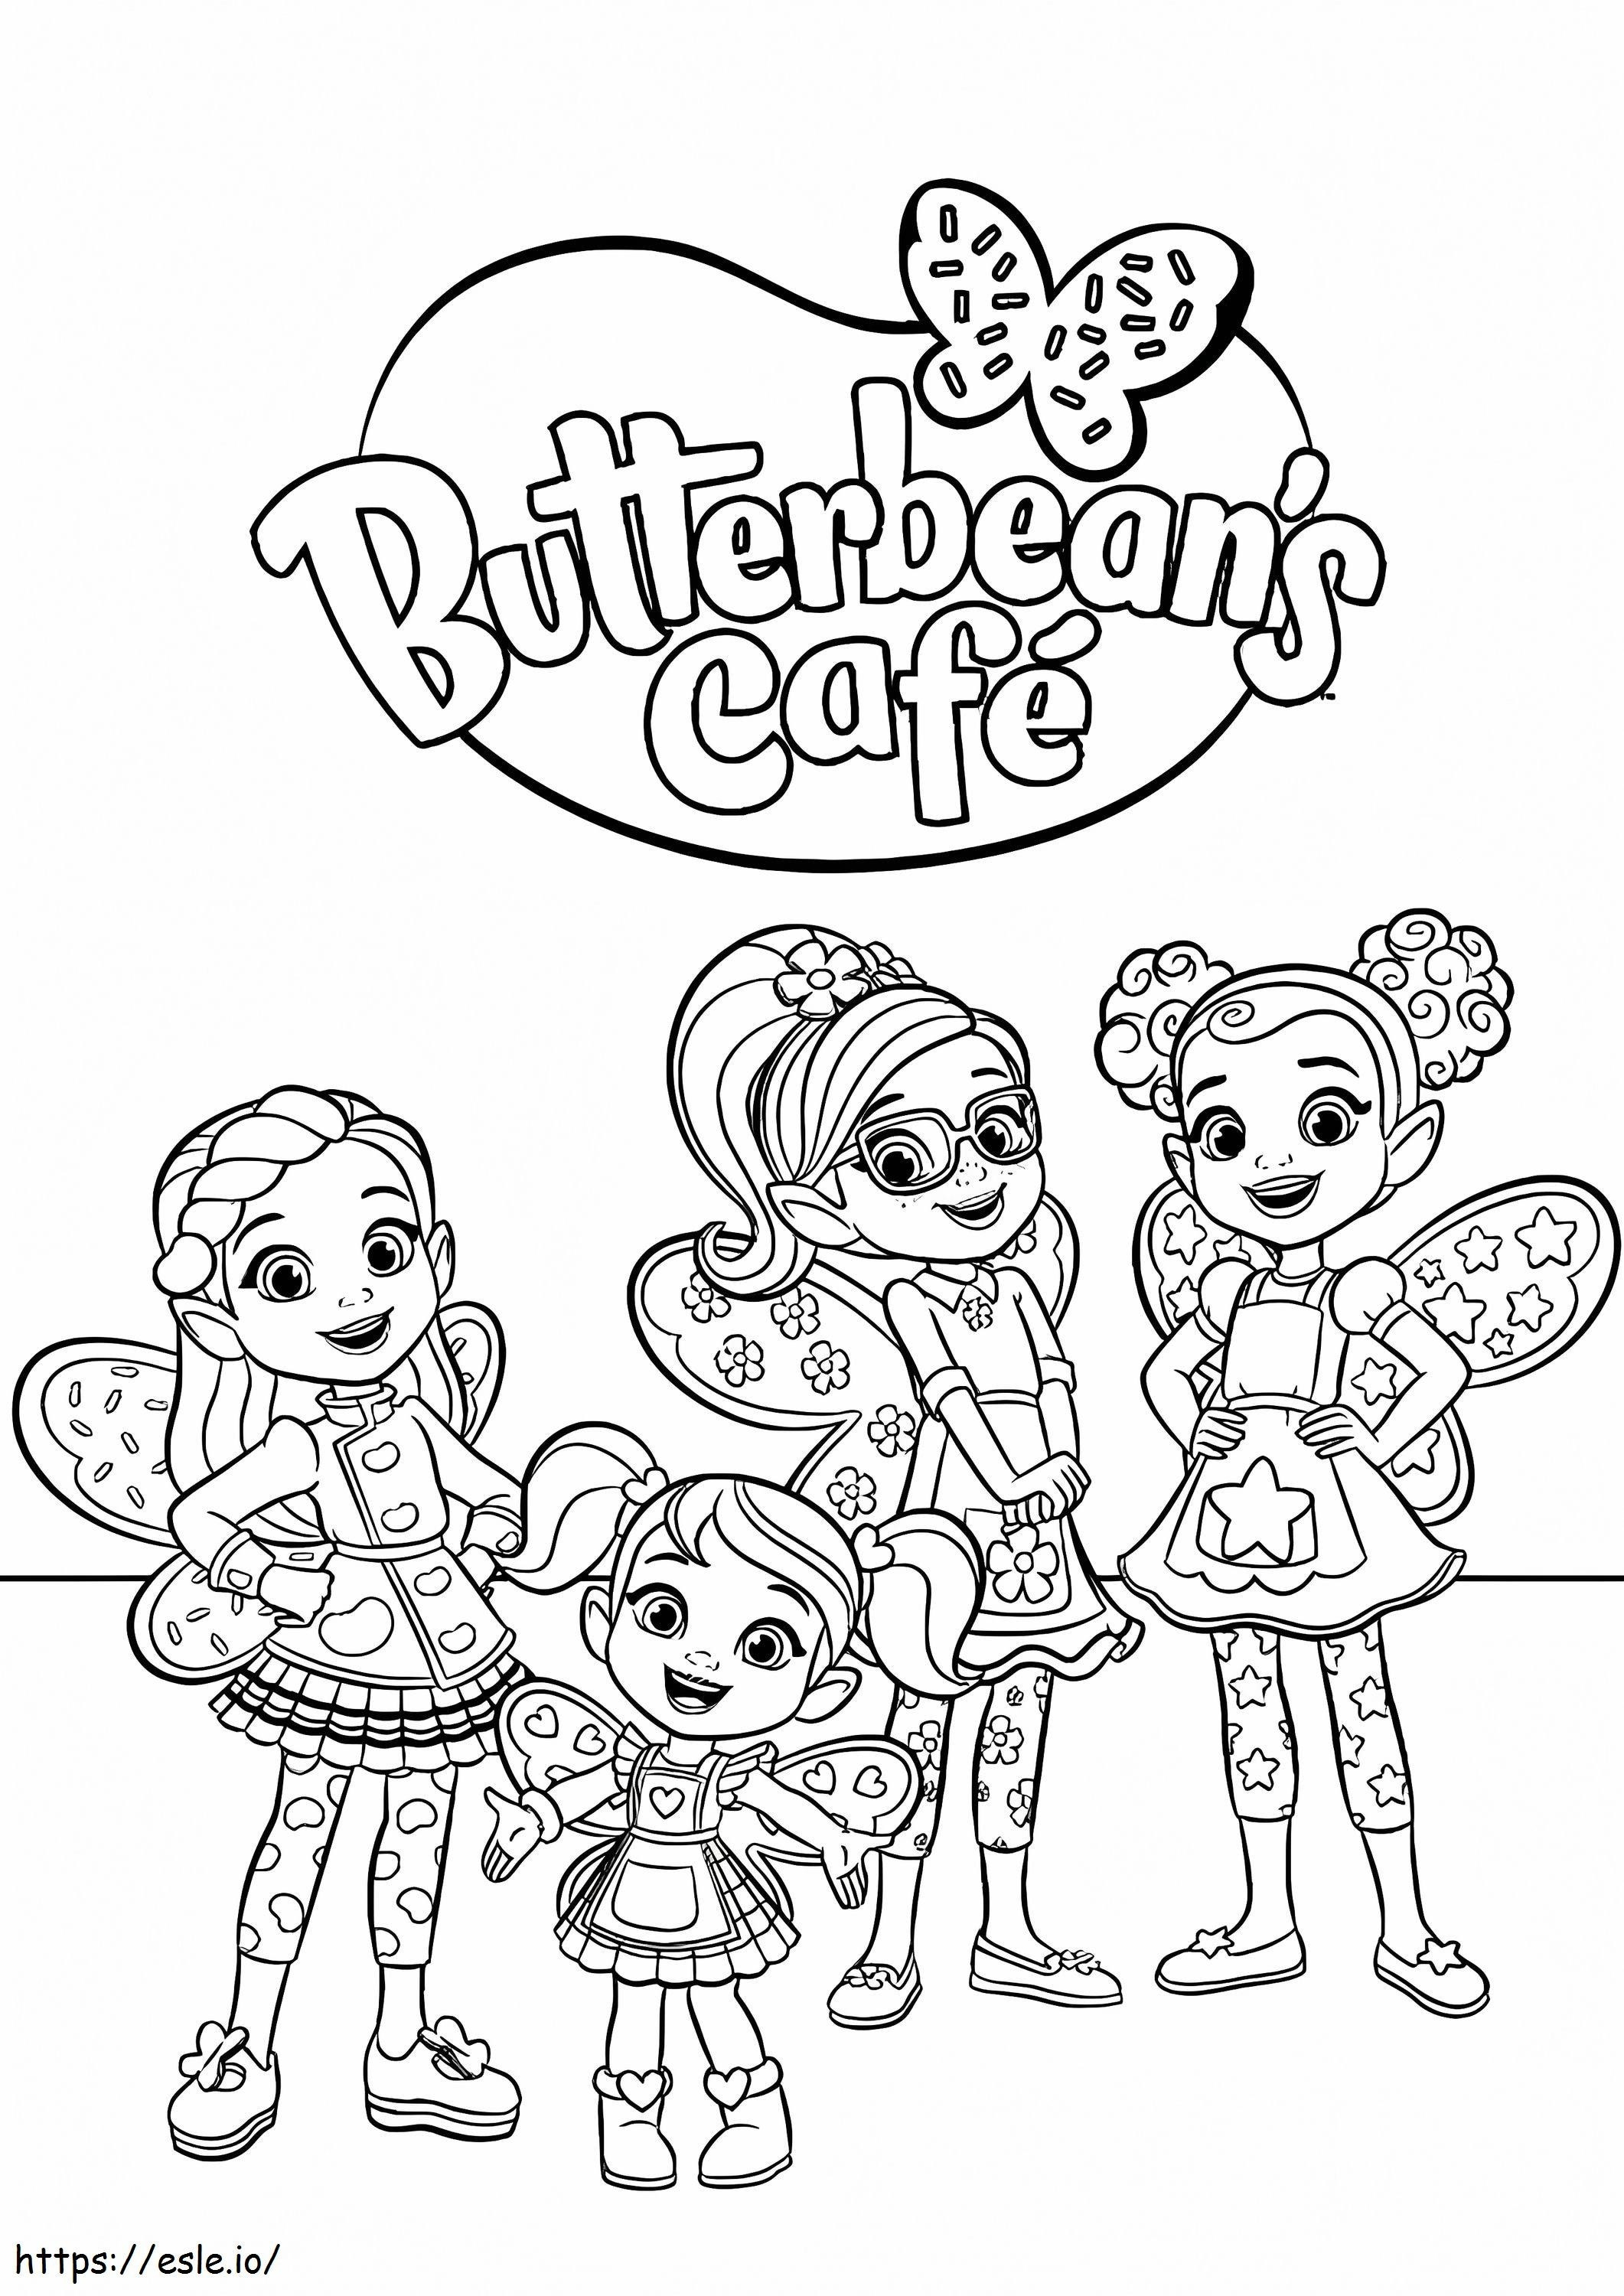 Personages uit Butterbeans Cafe kleurplaat kleurplaat